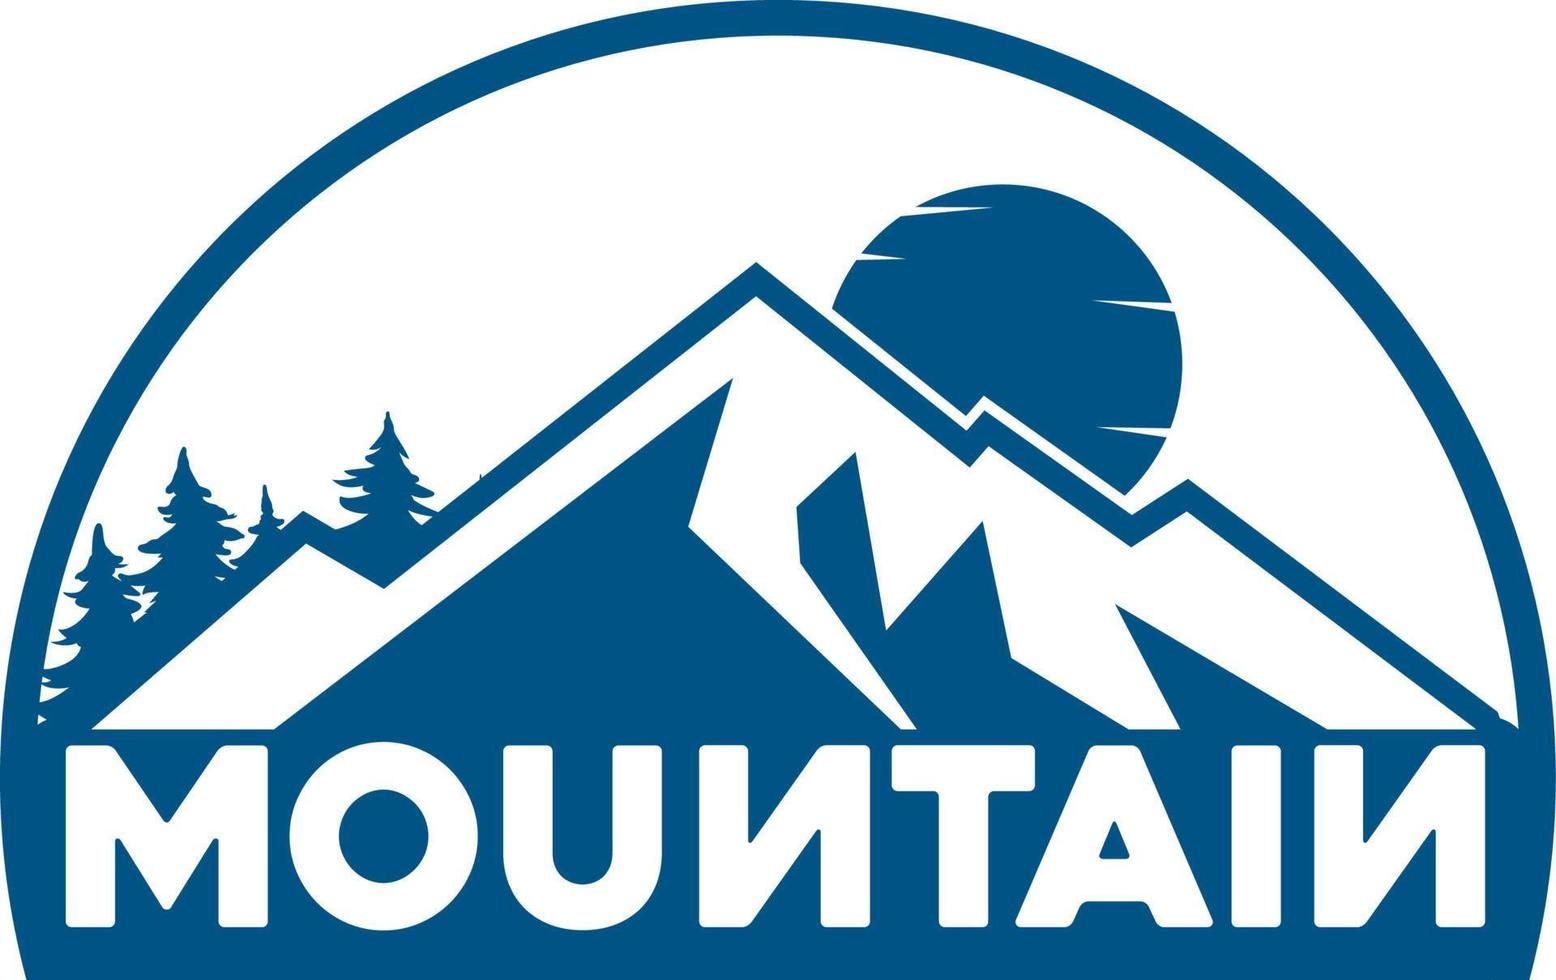 vettore semplice del modello di affari del logo della montagna